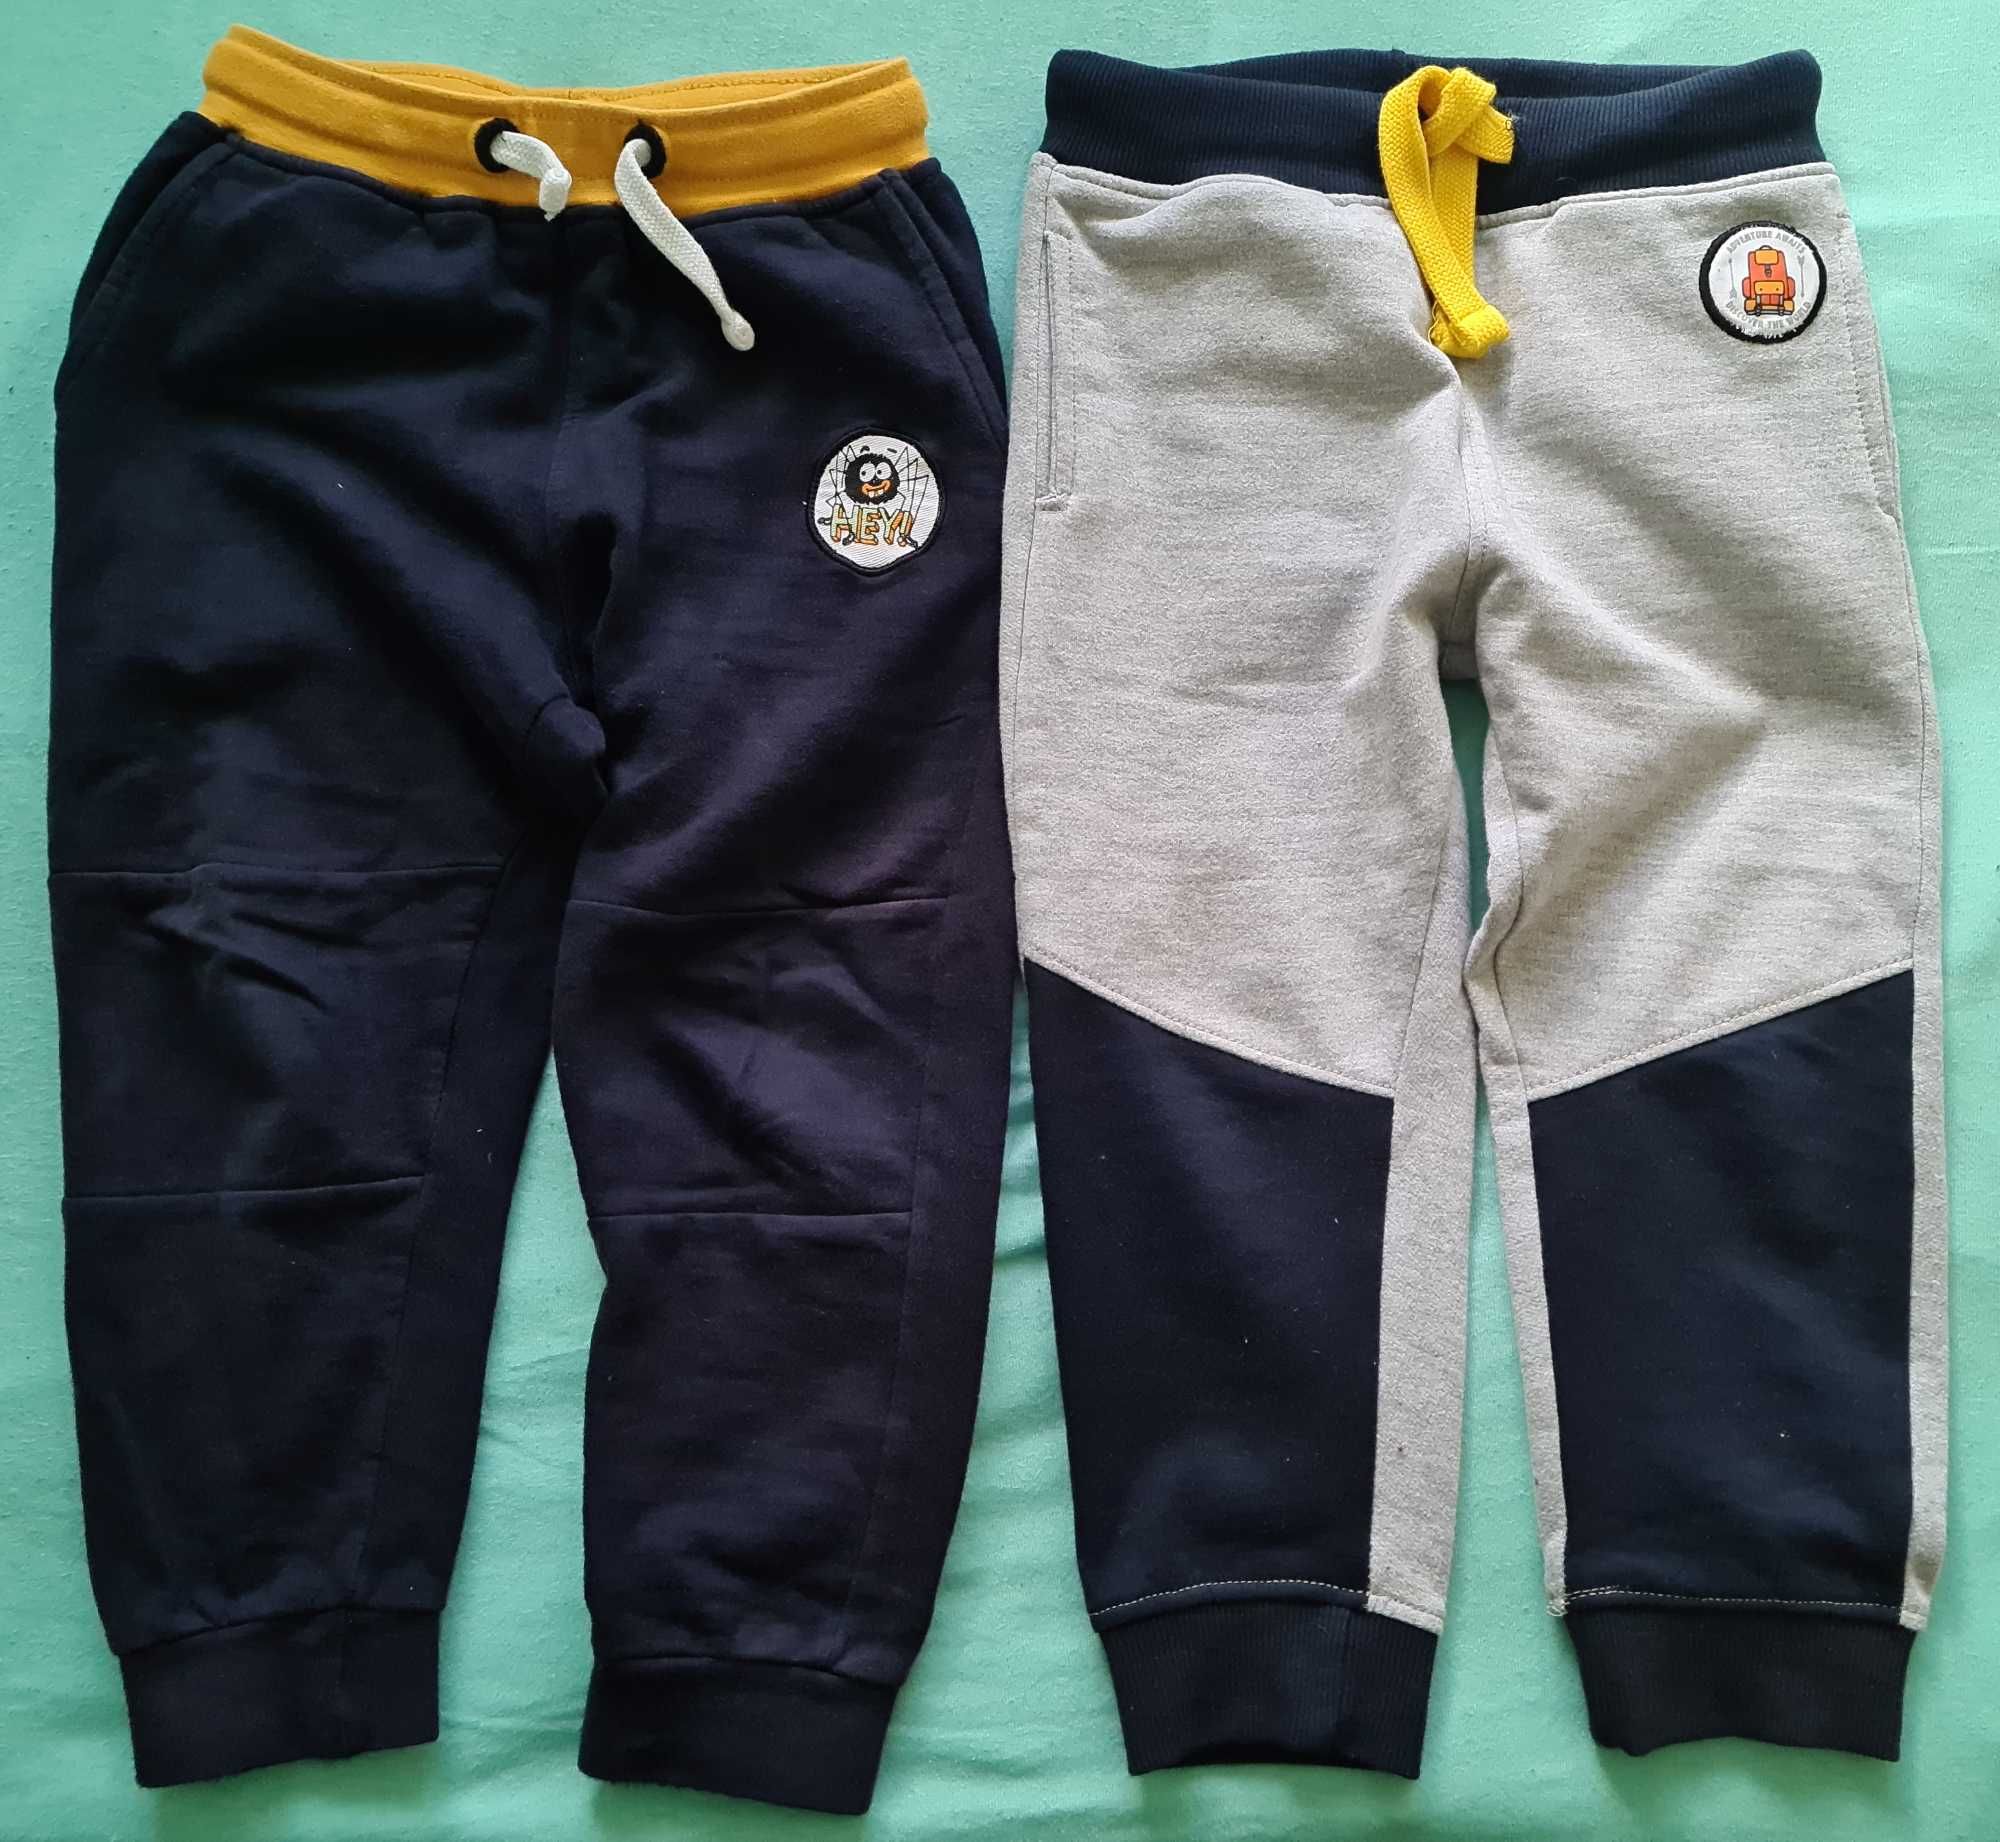 3 pary ciepłych spodni dresowych dla chłopca i 3 pary leginsów, r. 104